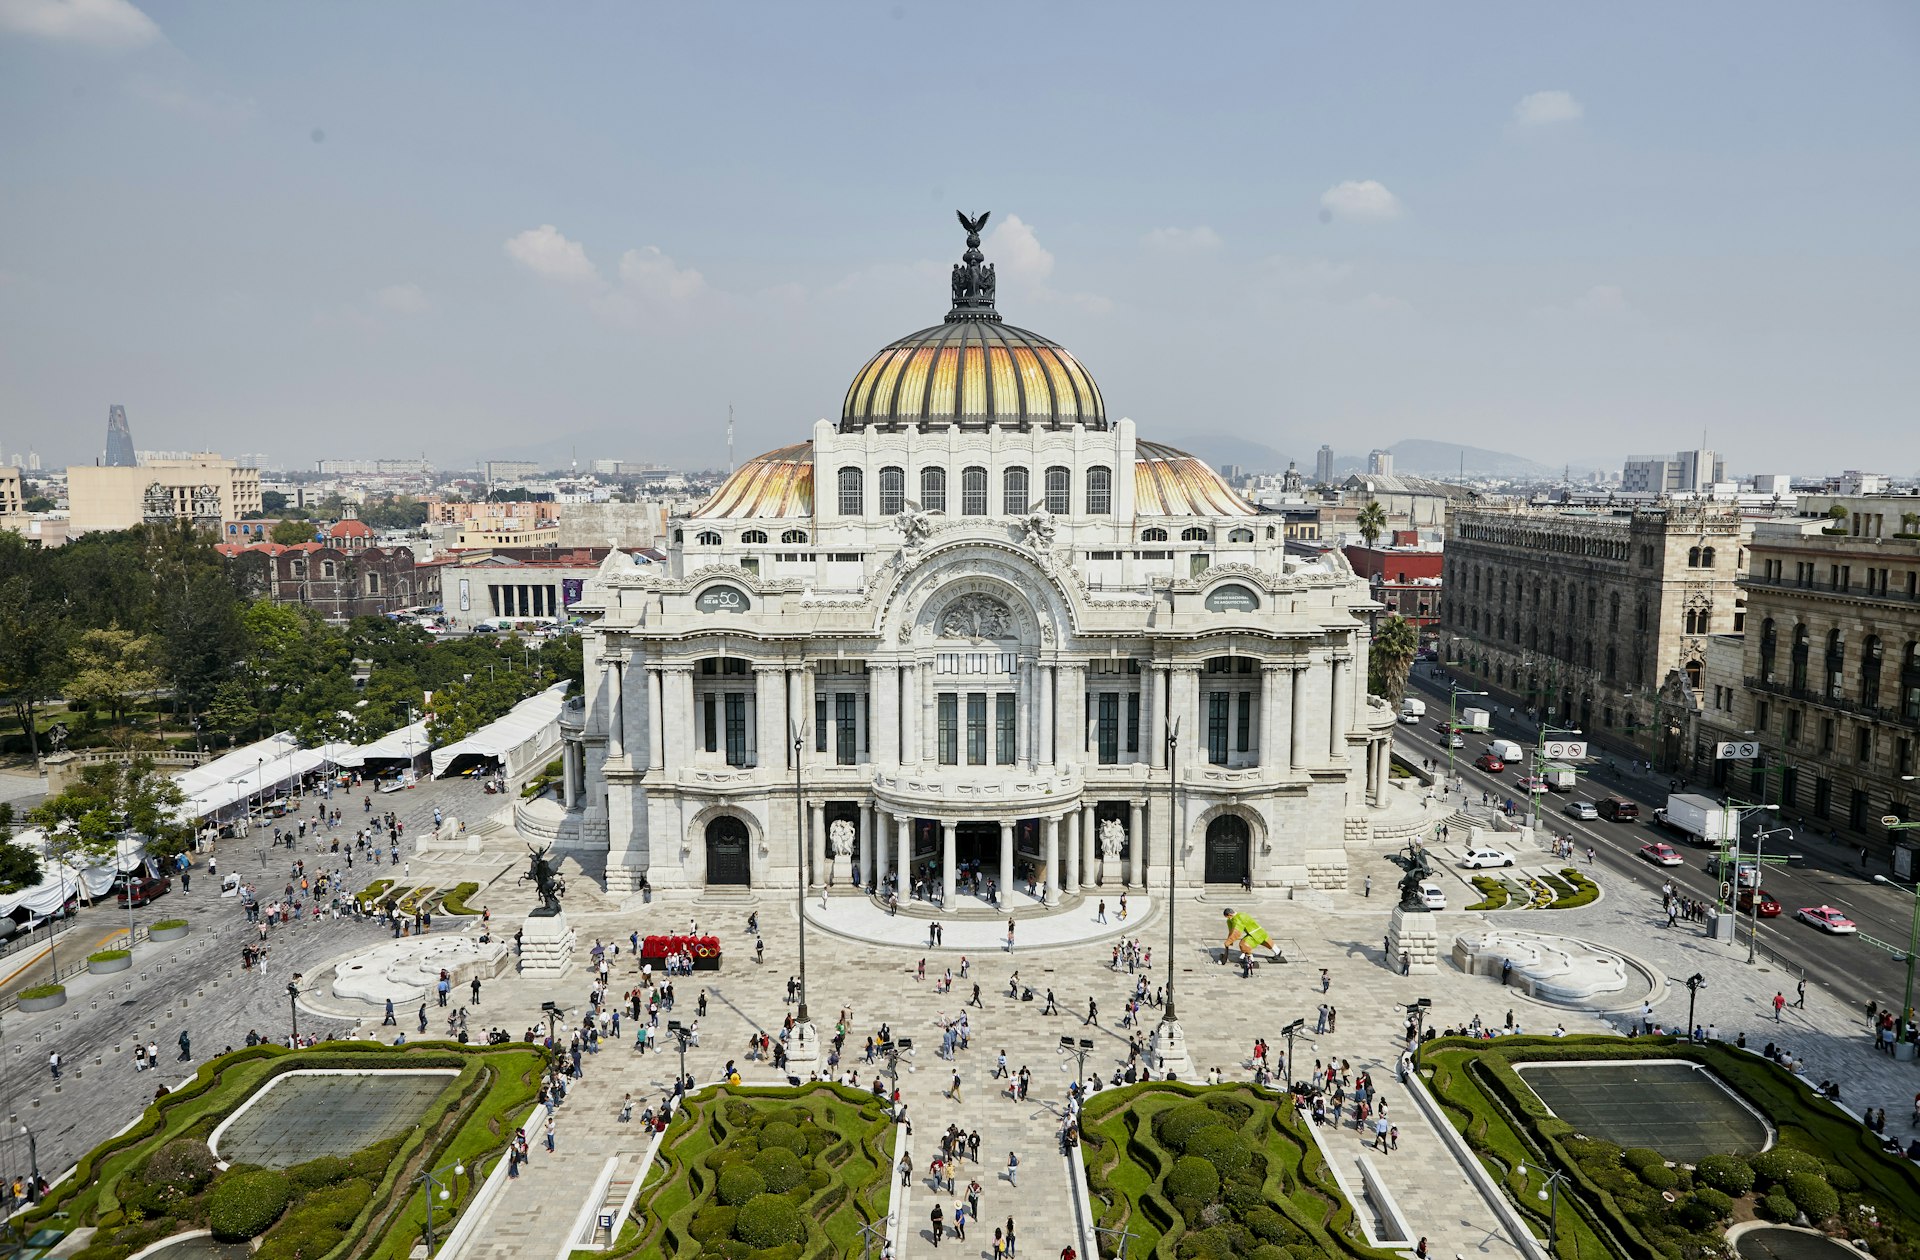 Aerial view of the Palacio de Bellas Artes, Mexico City